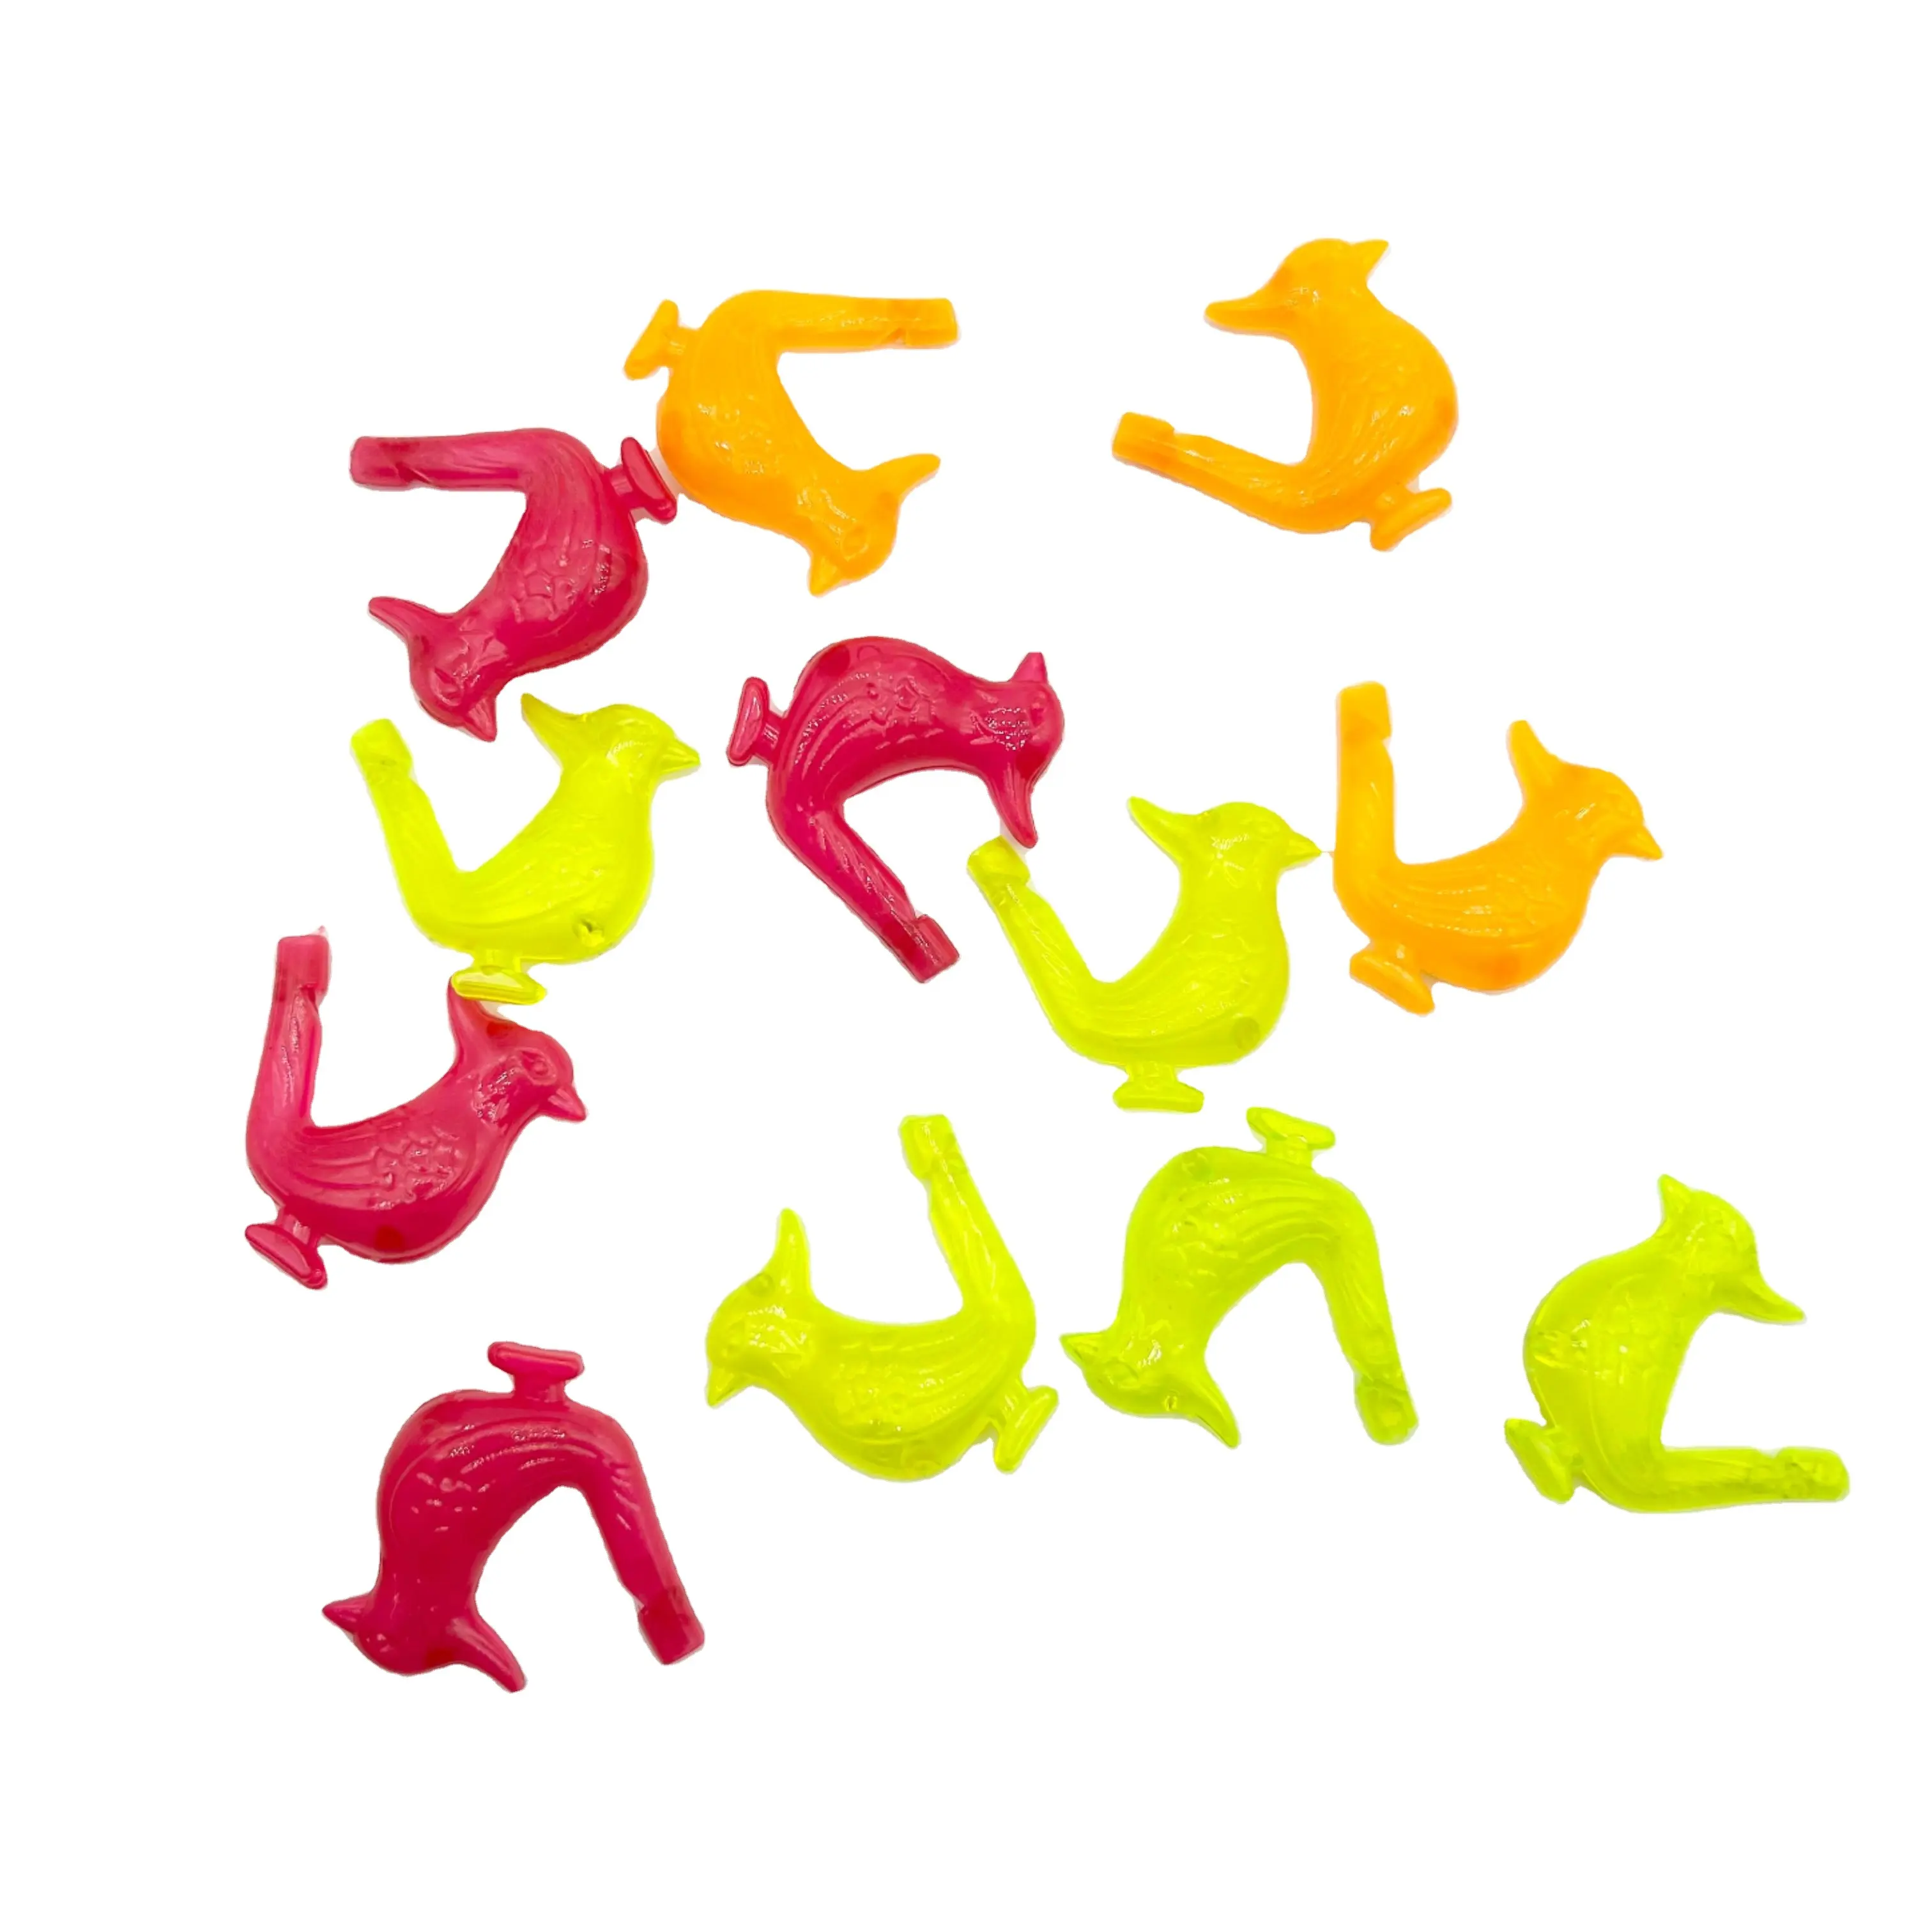 Silbato de pájaro de plástico clásico para niños, pequeño juguete de cápsula promocional con fabricante de ruido, regalo para niños